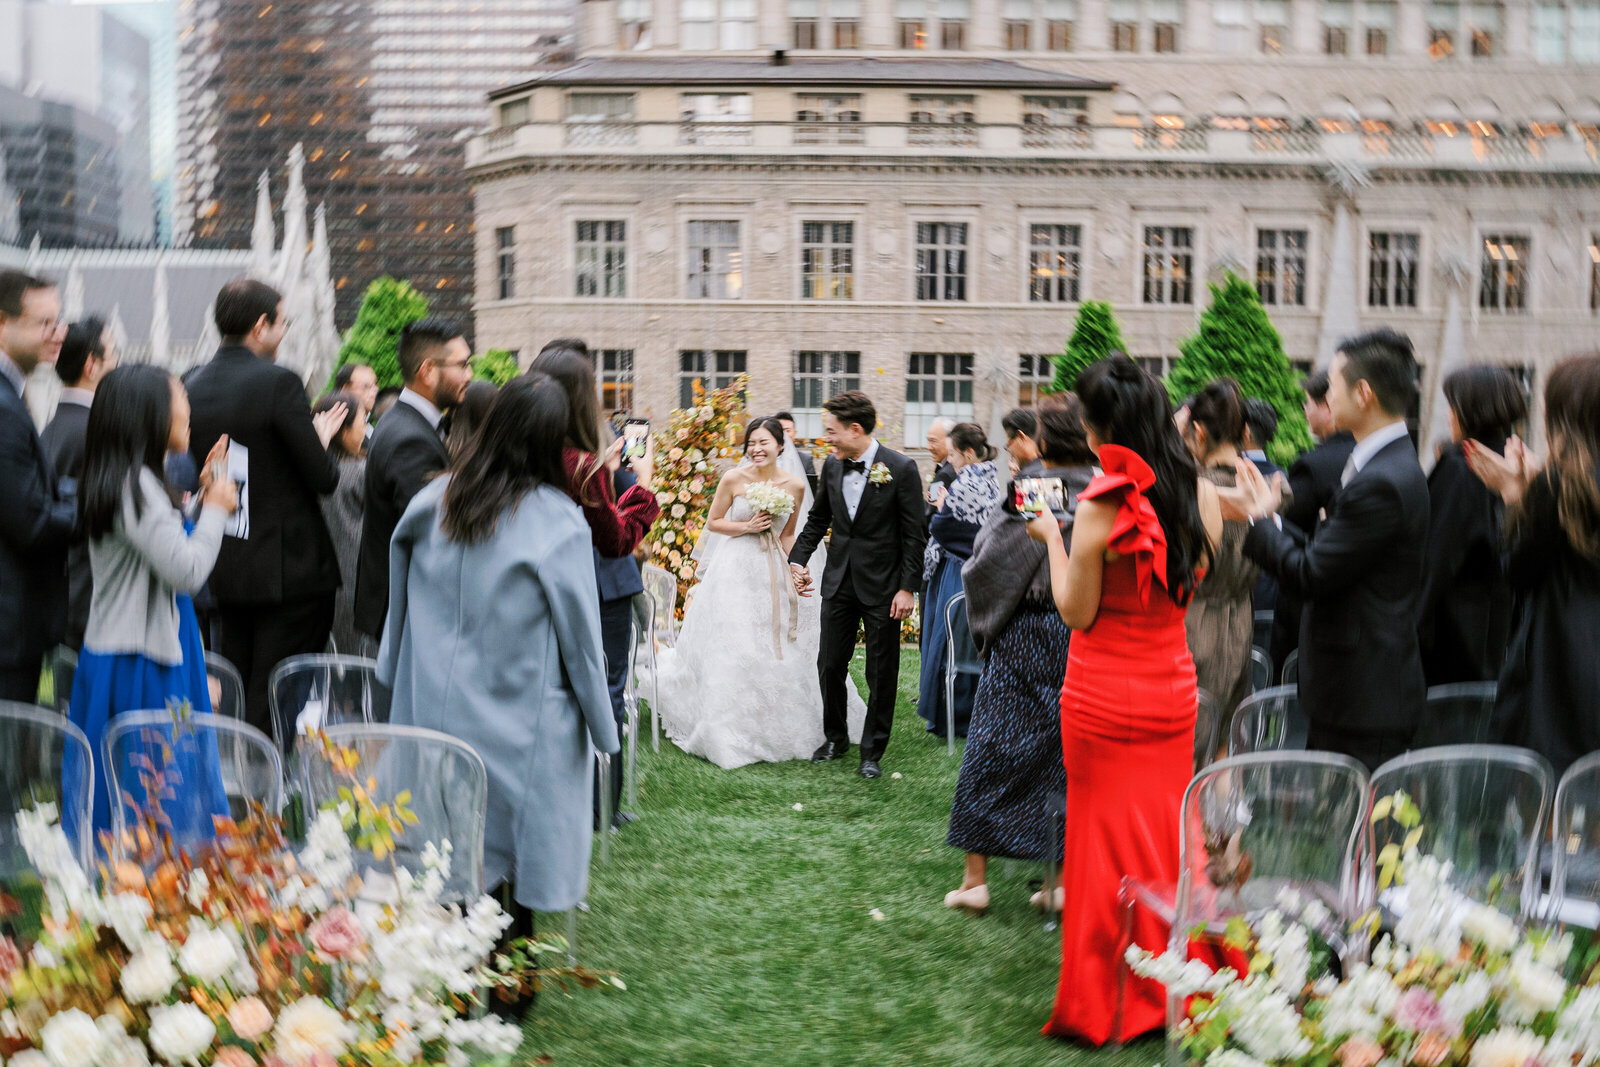 620 Loft & Garden New York City Rooftop wedding in fall overlooking Saks Fifth Avenue